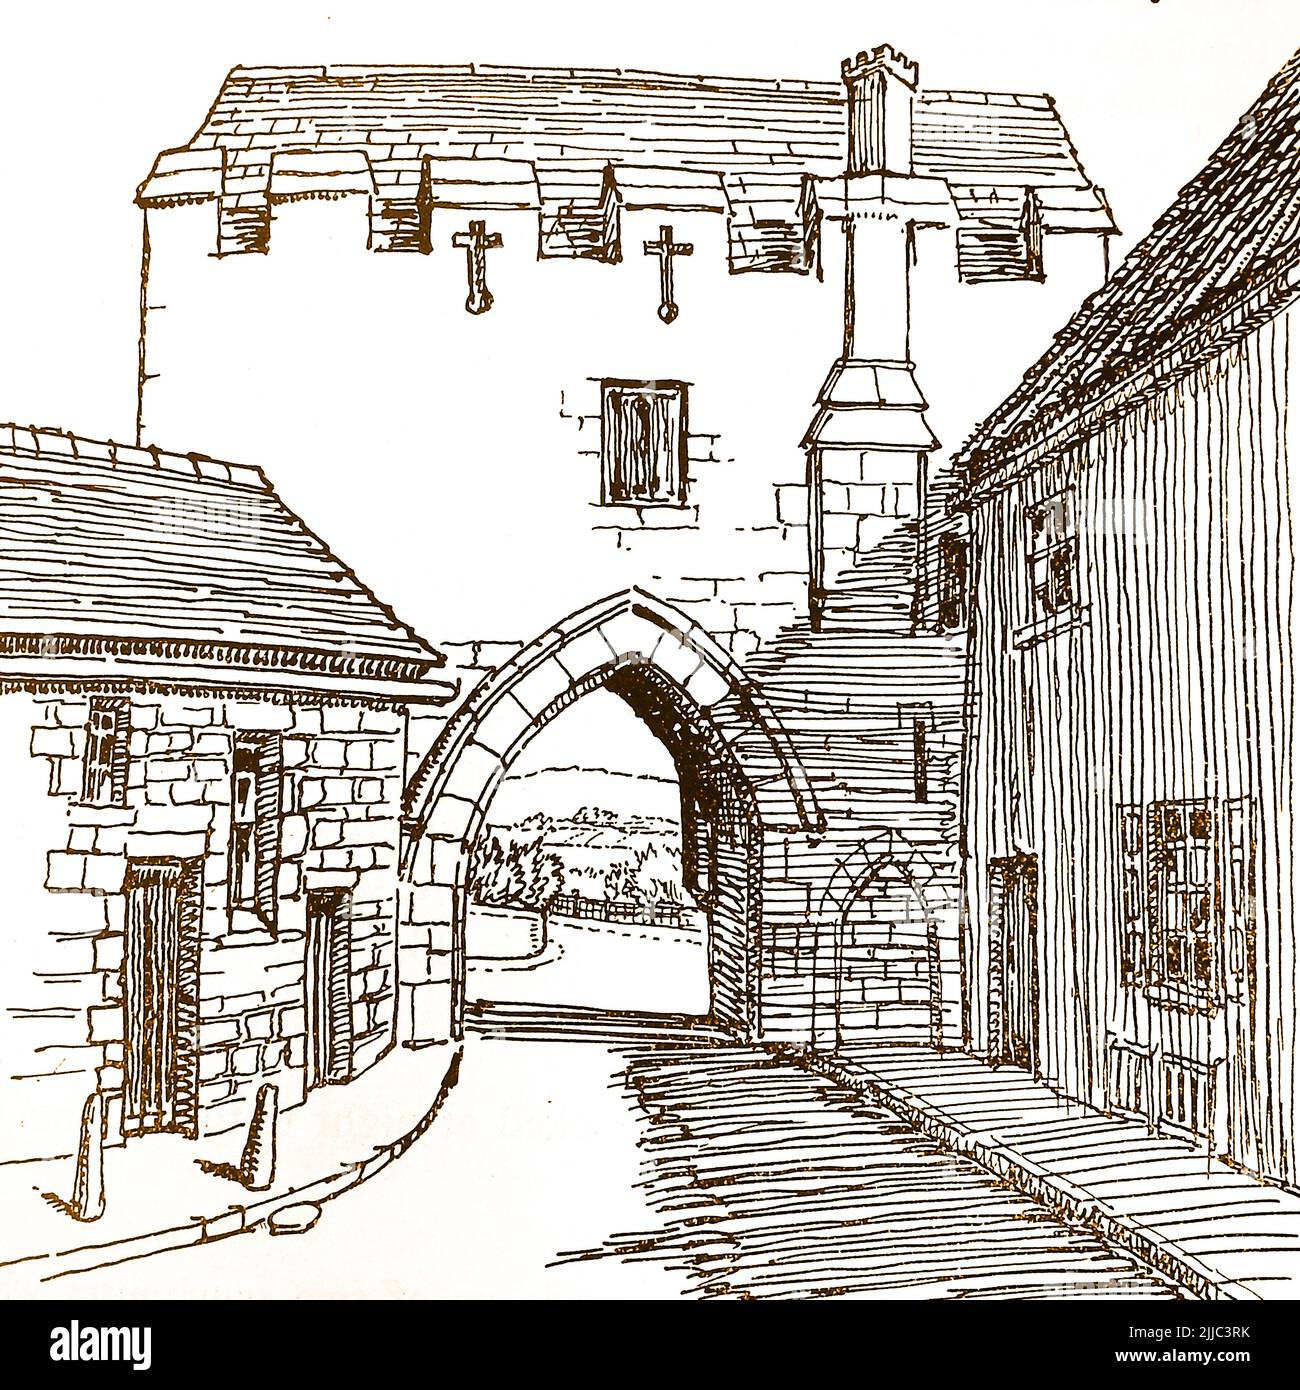 Historia de Lincoln, Inglaterra - Un viejo boceto del Arco de Pottergate (lado norte), ya que una vez fue construido a mediados del siglo 15th, restaurado en 1884 y de nuevo a finales del siglo 20th. Foto de stock